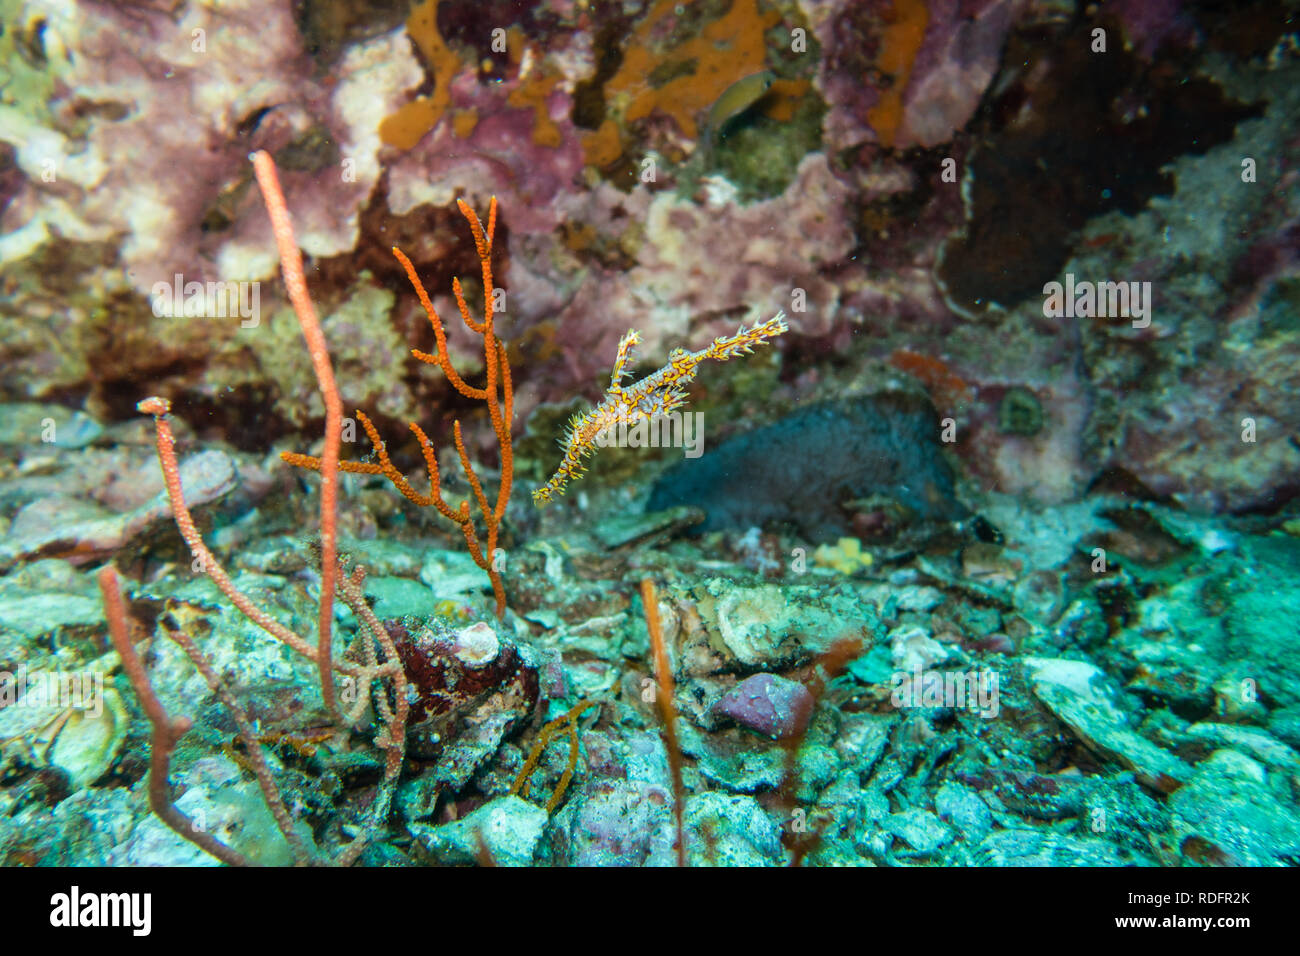 Thailand: verzierten ghost Rohr Fisch mit seiner Tarnung Fähigkeiten am Korallenriff der Welt Klasse Tauchen Punkt Richelieu Rock Stockfoto